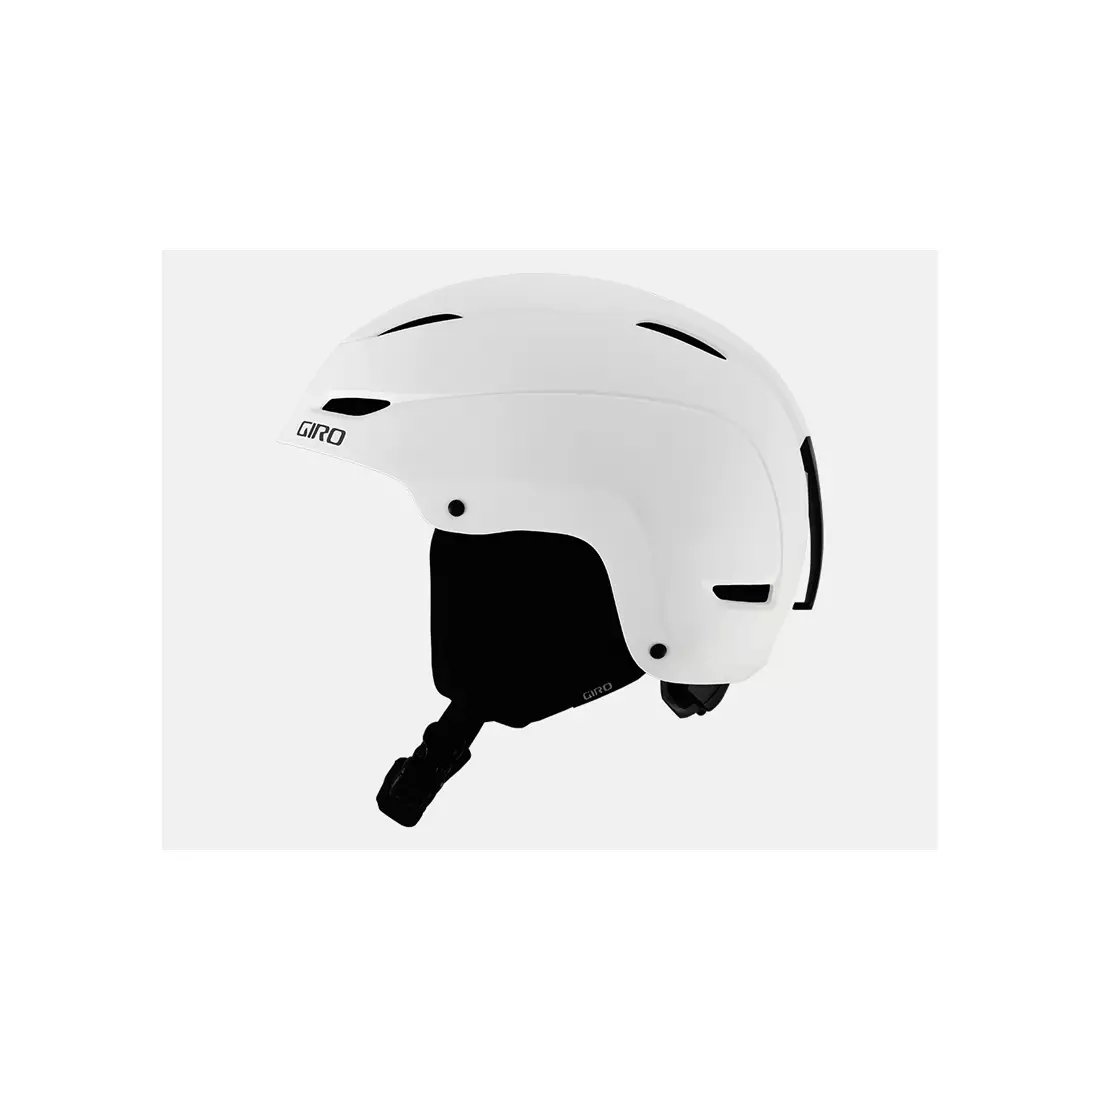 Ski/snowboard helmet GIRO SCALE matte white 